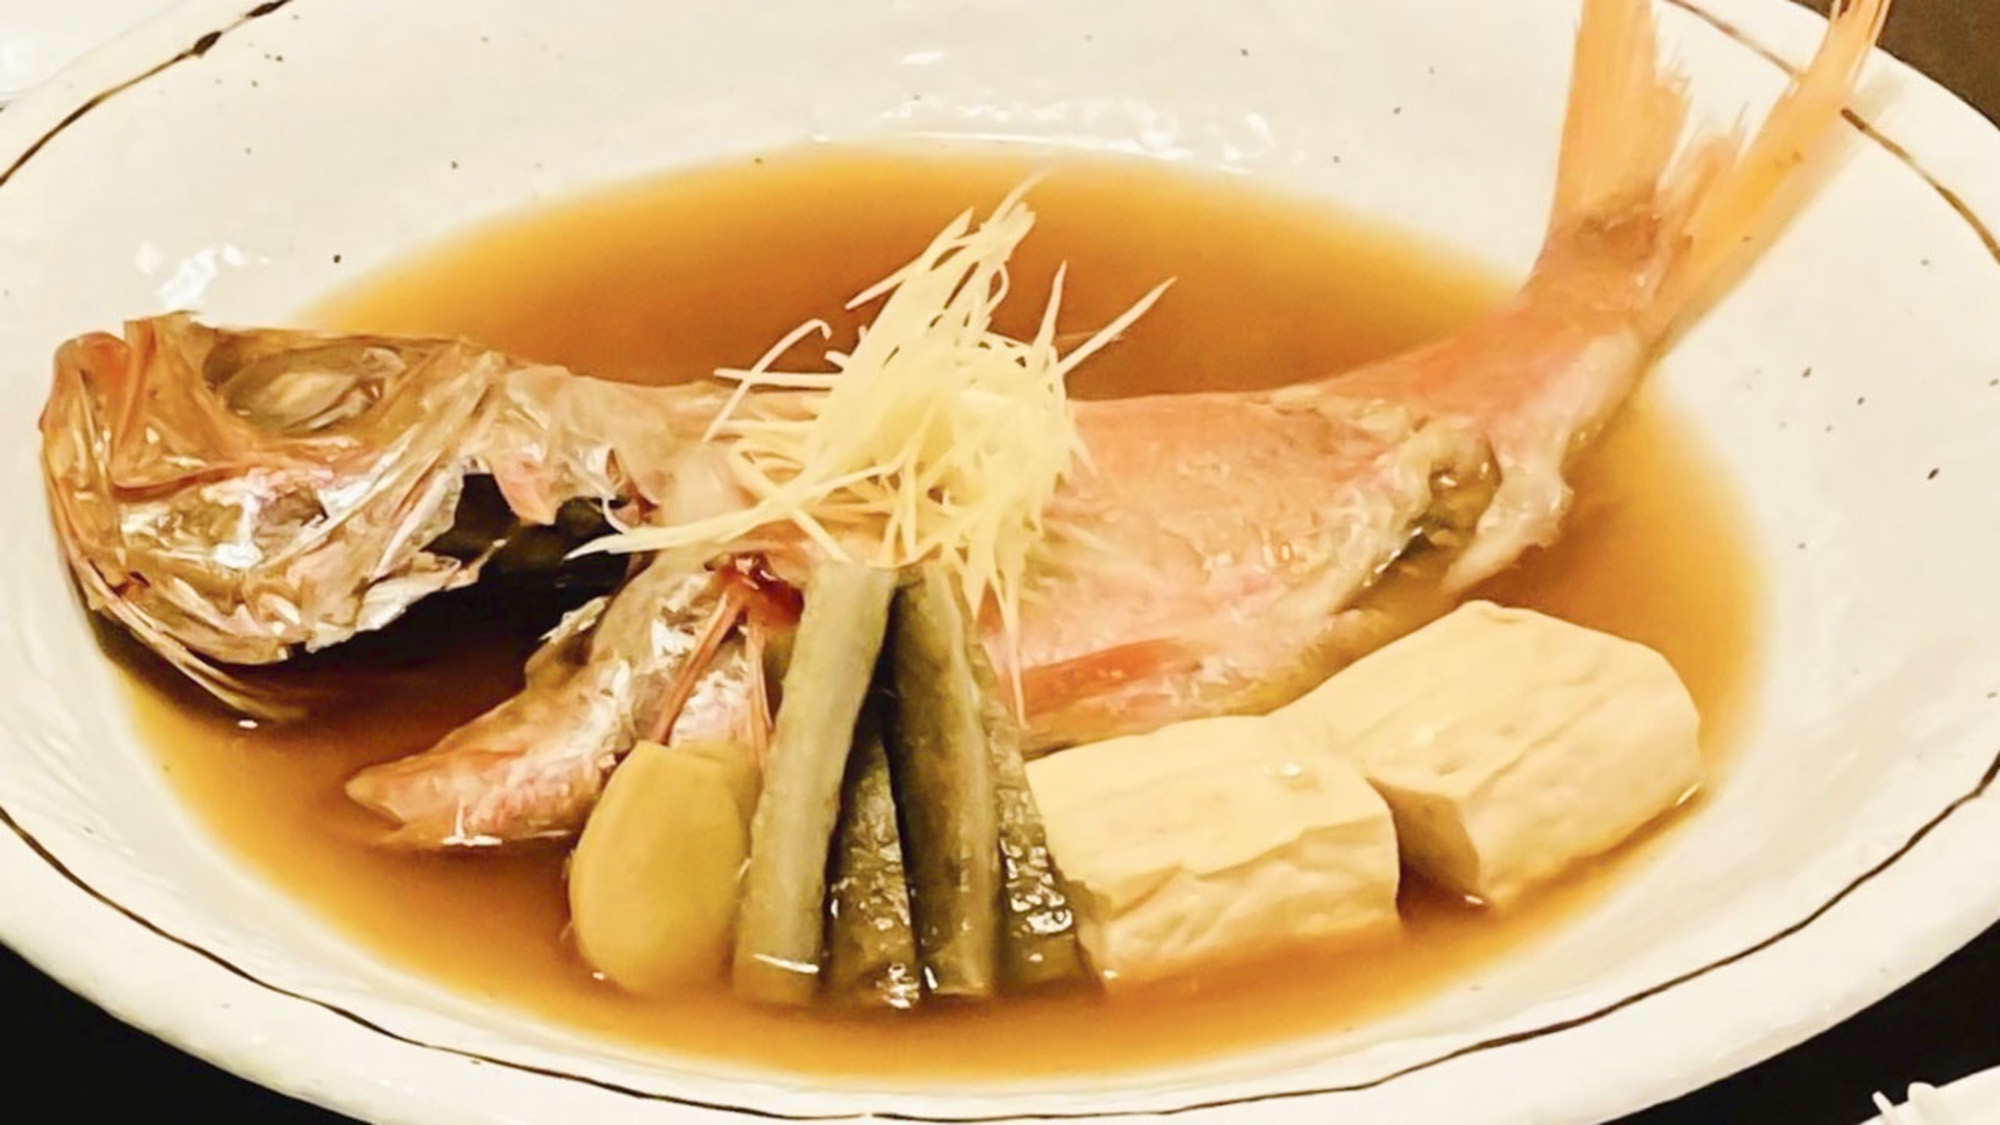 ・【食事】伊豆・熱海で食べたい魚と言えば金目鯛の煮付け、ぜひ、ご賞味ください